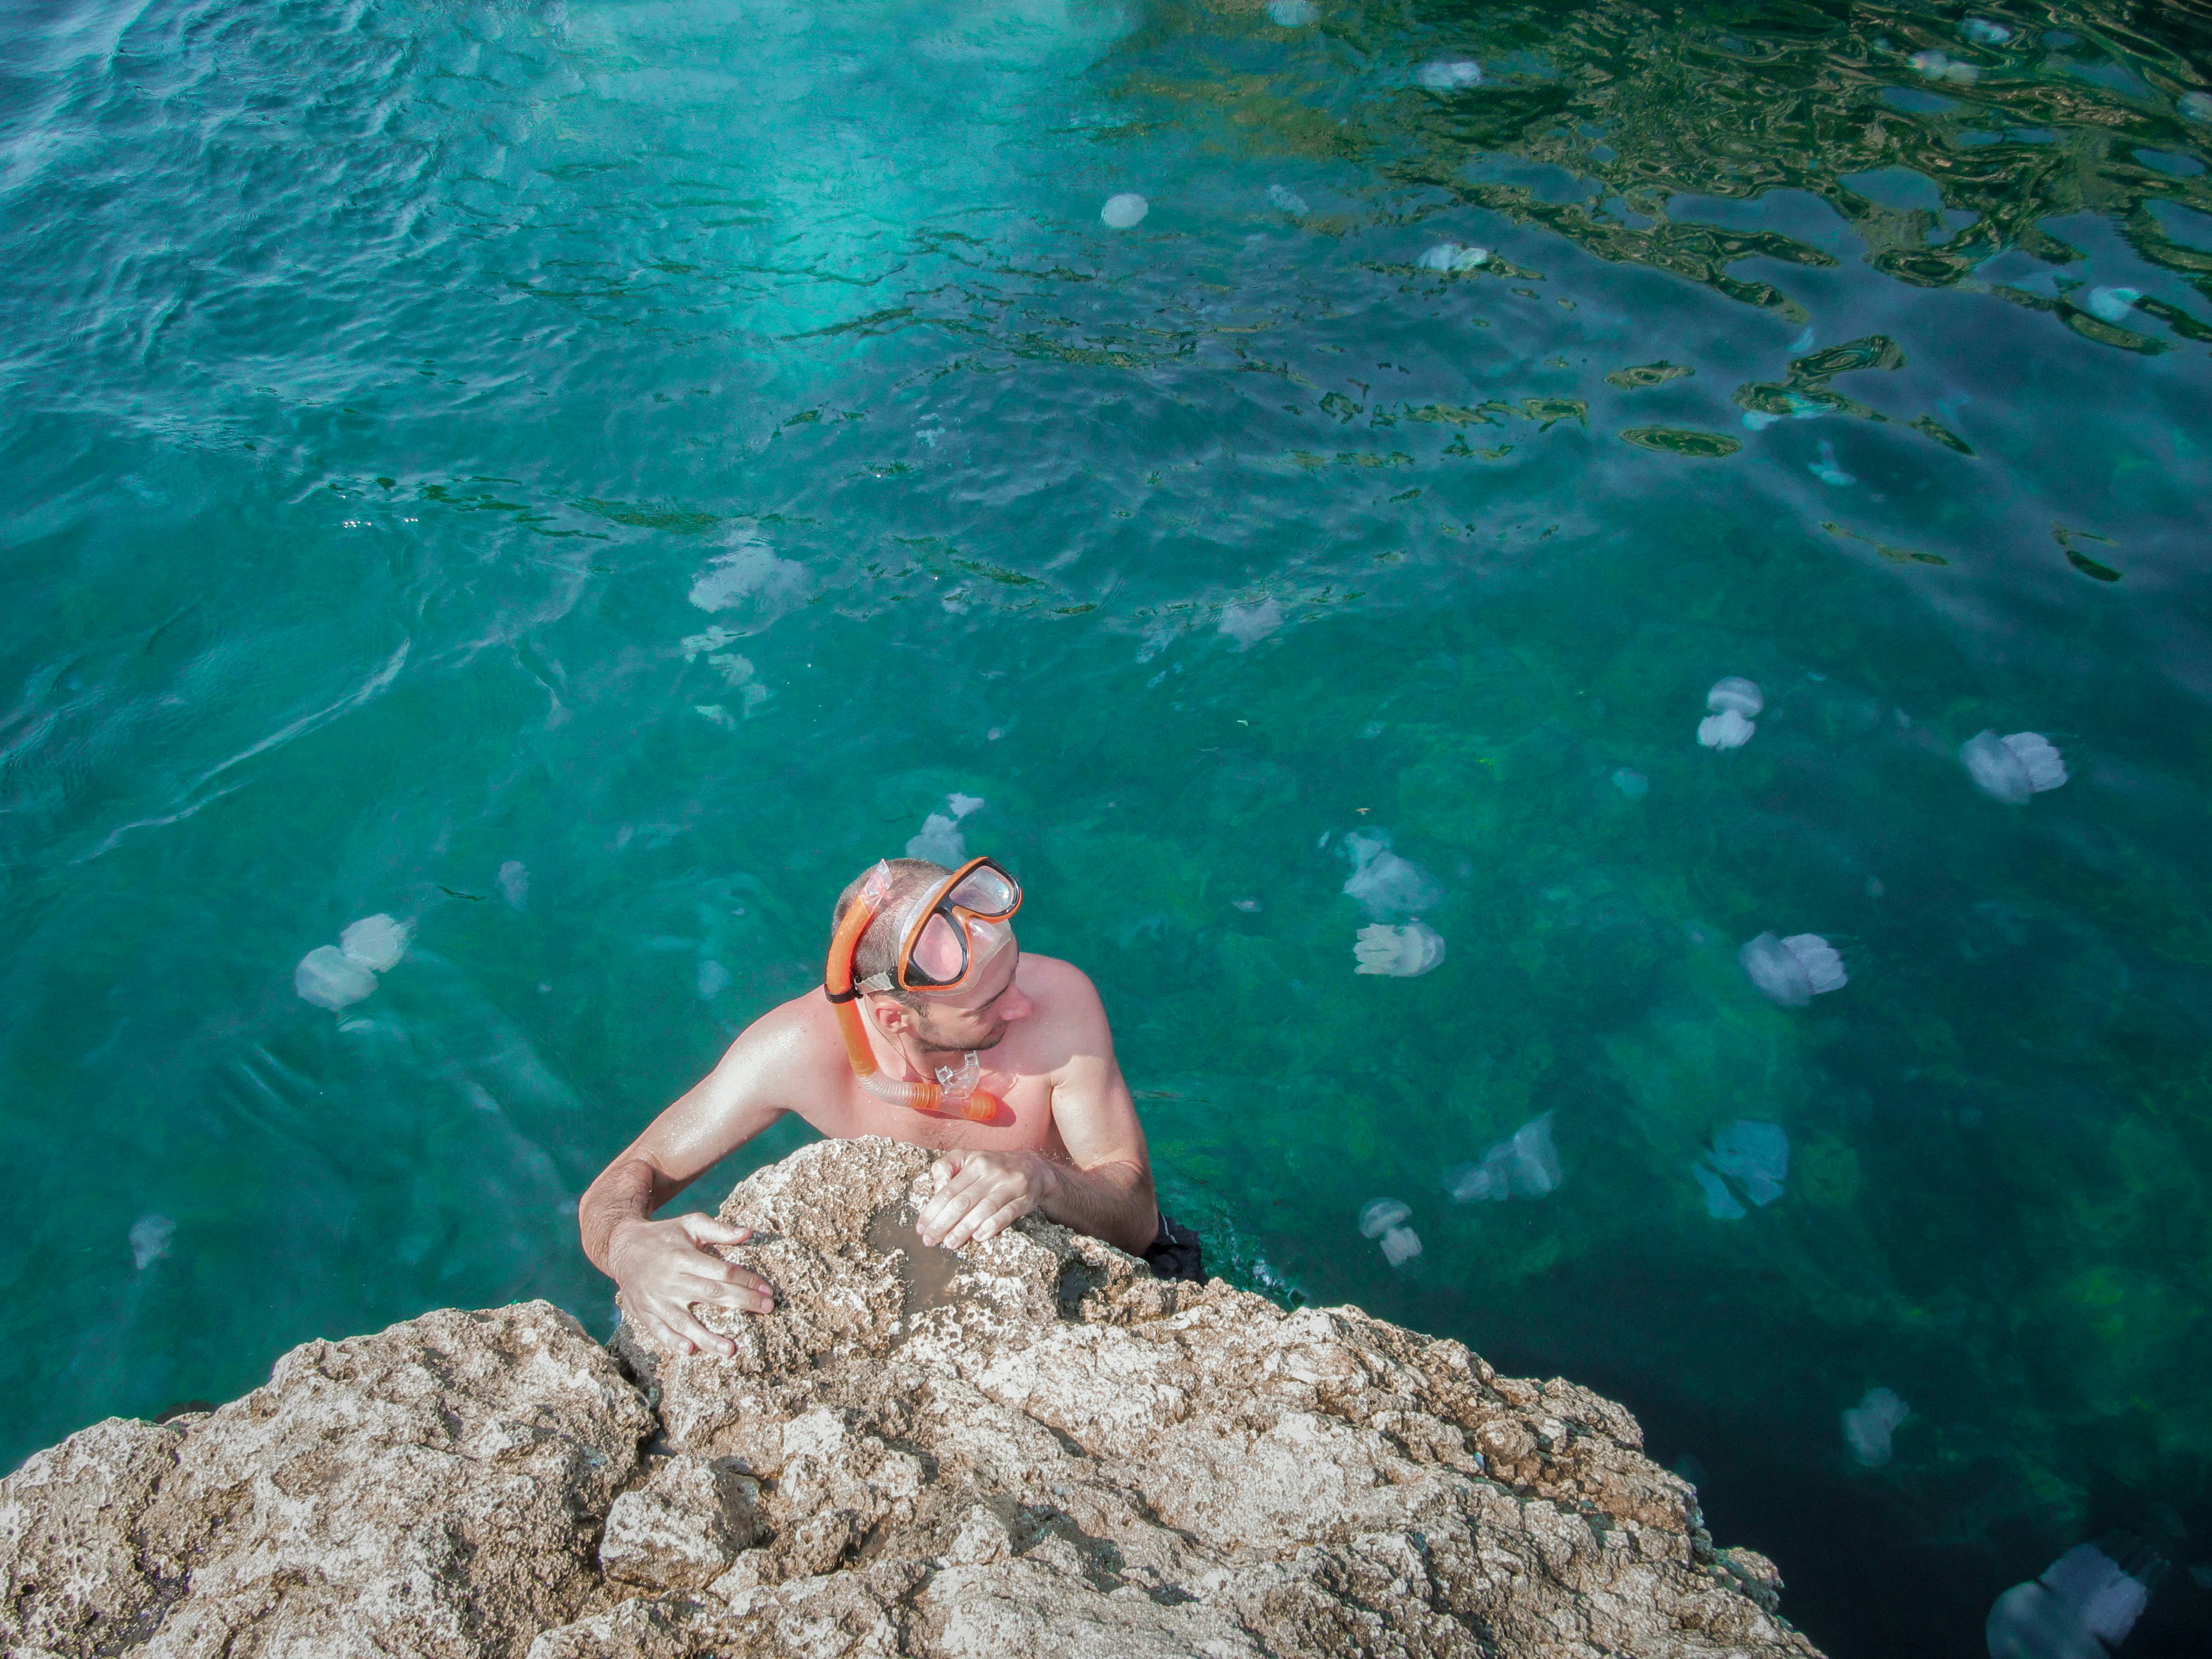 Quallen sind im Mittelmeer in den Sommermonaten häufiger anzutreffen, wenn die Wassertemperaturen höher sind und mehr Sonnenlicht für das Planktonwachstum zur Verfügung steht.